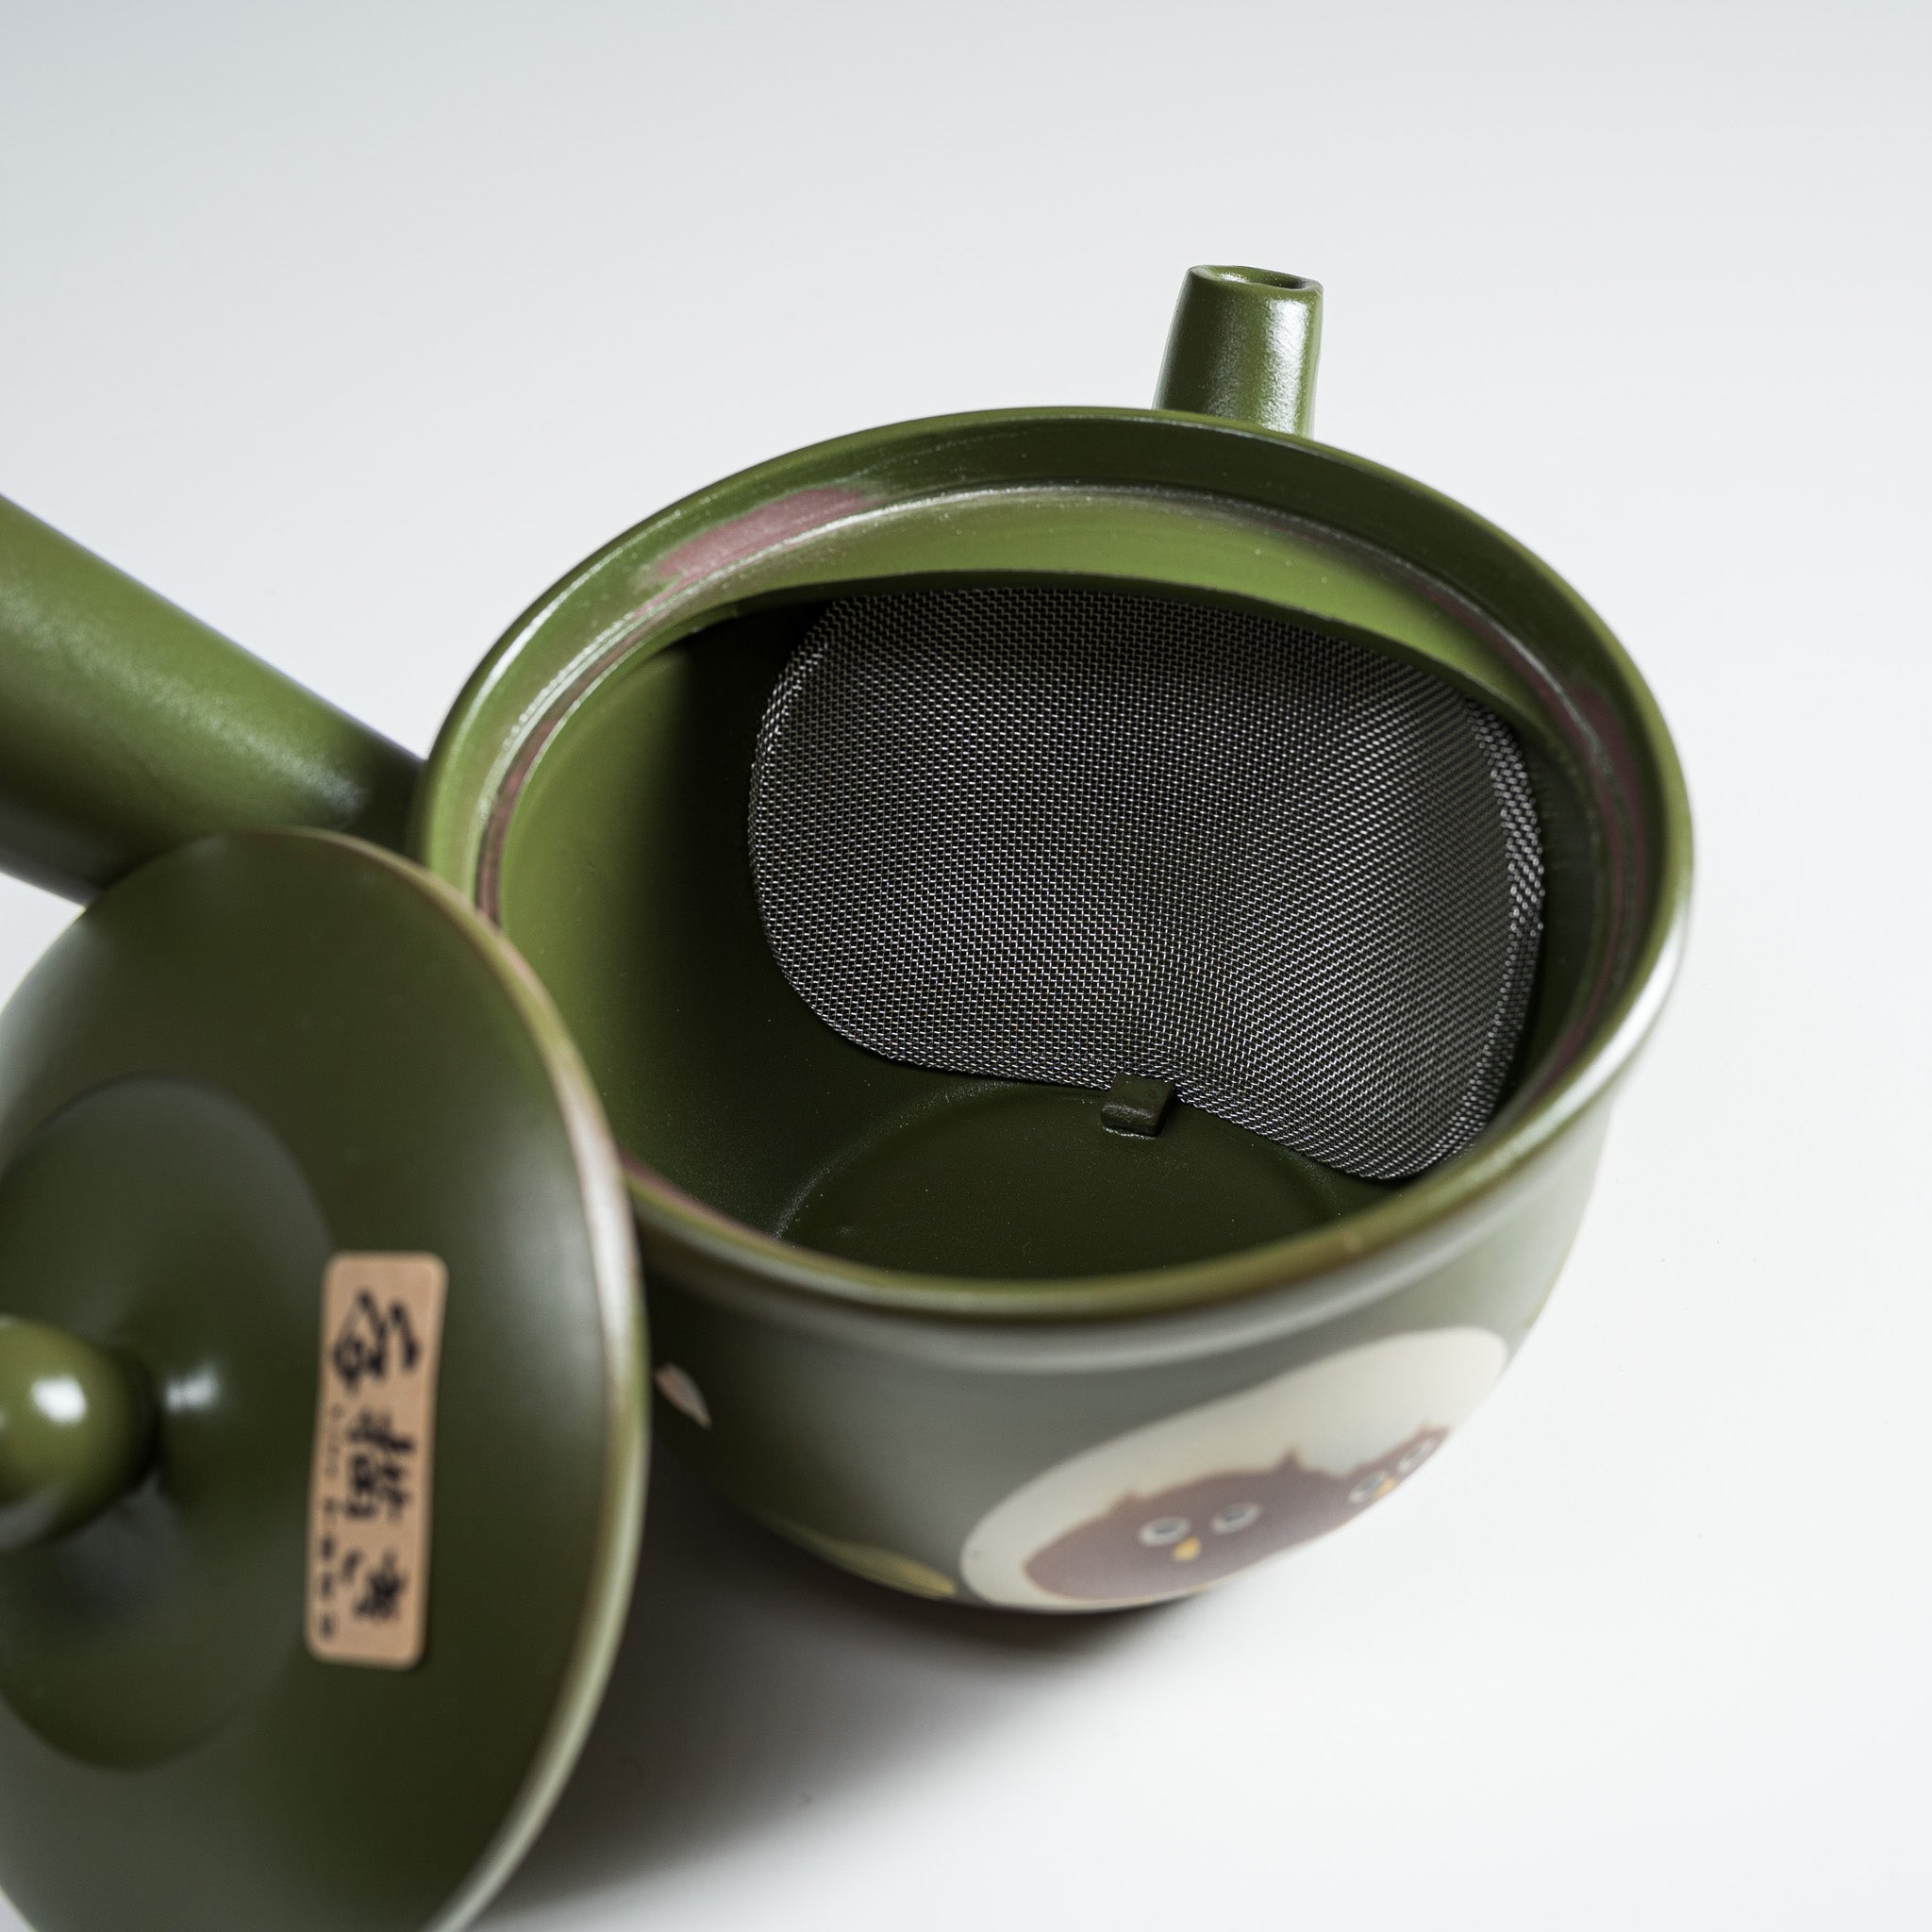 Hand-painted Tokoname Teapot - Matcha Green - 320ml / 常滑急須